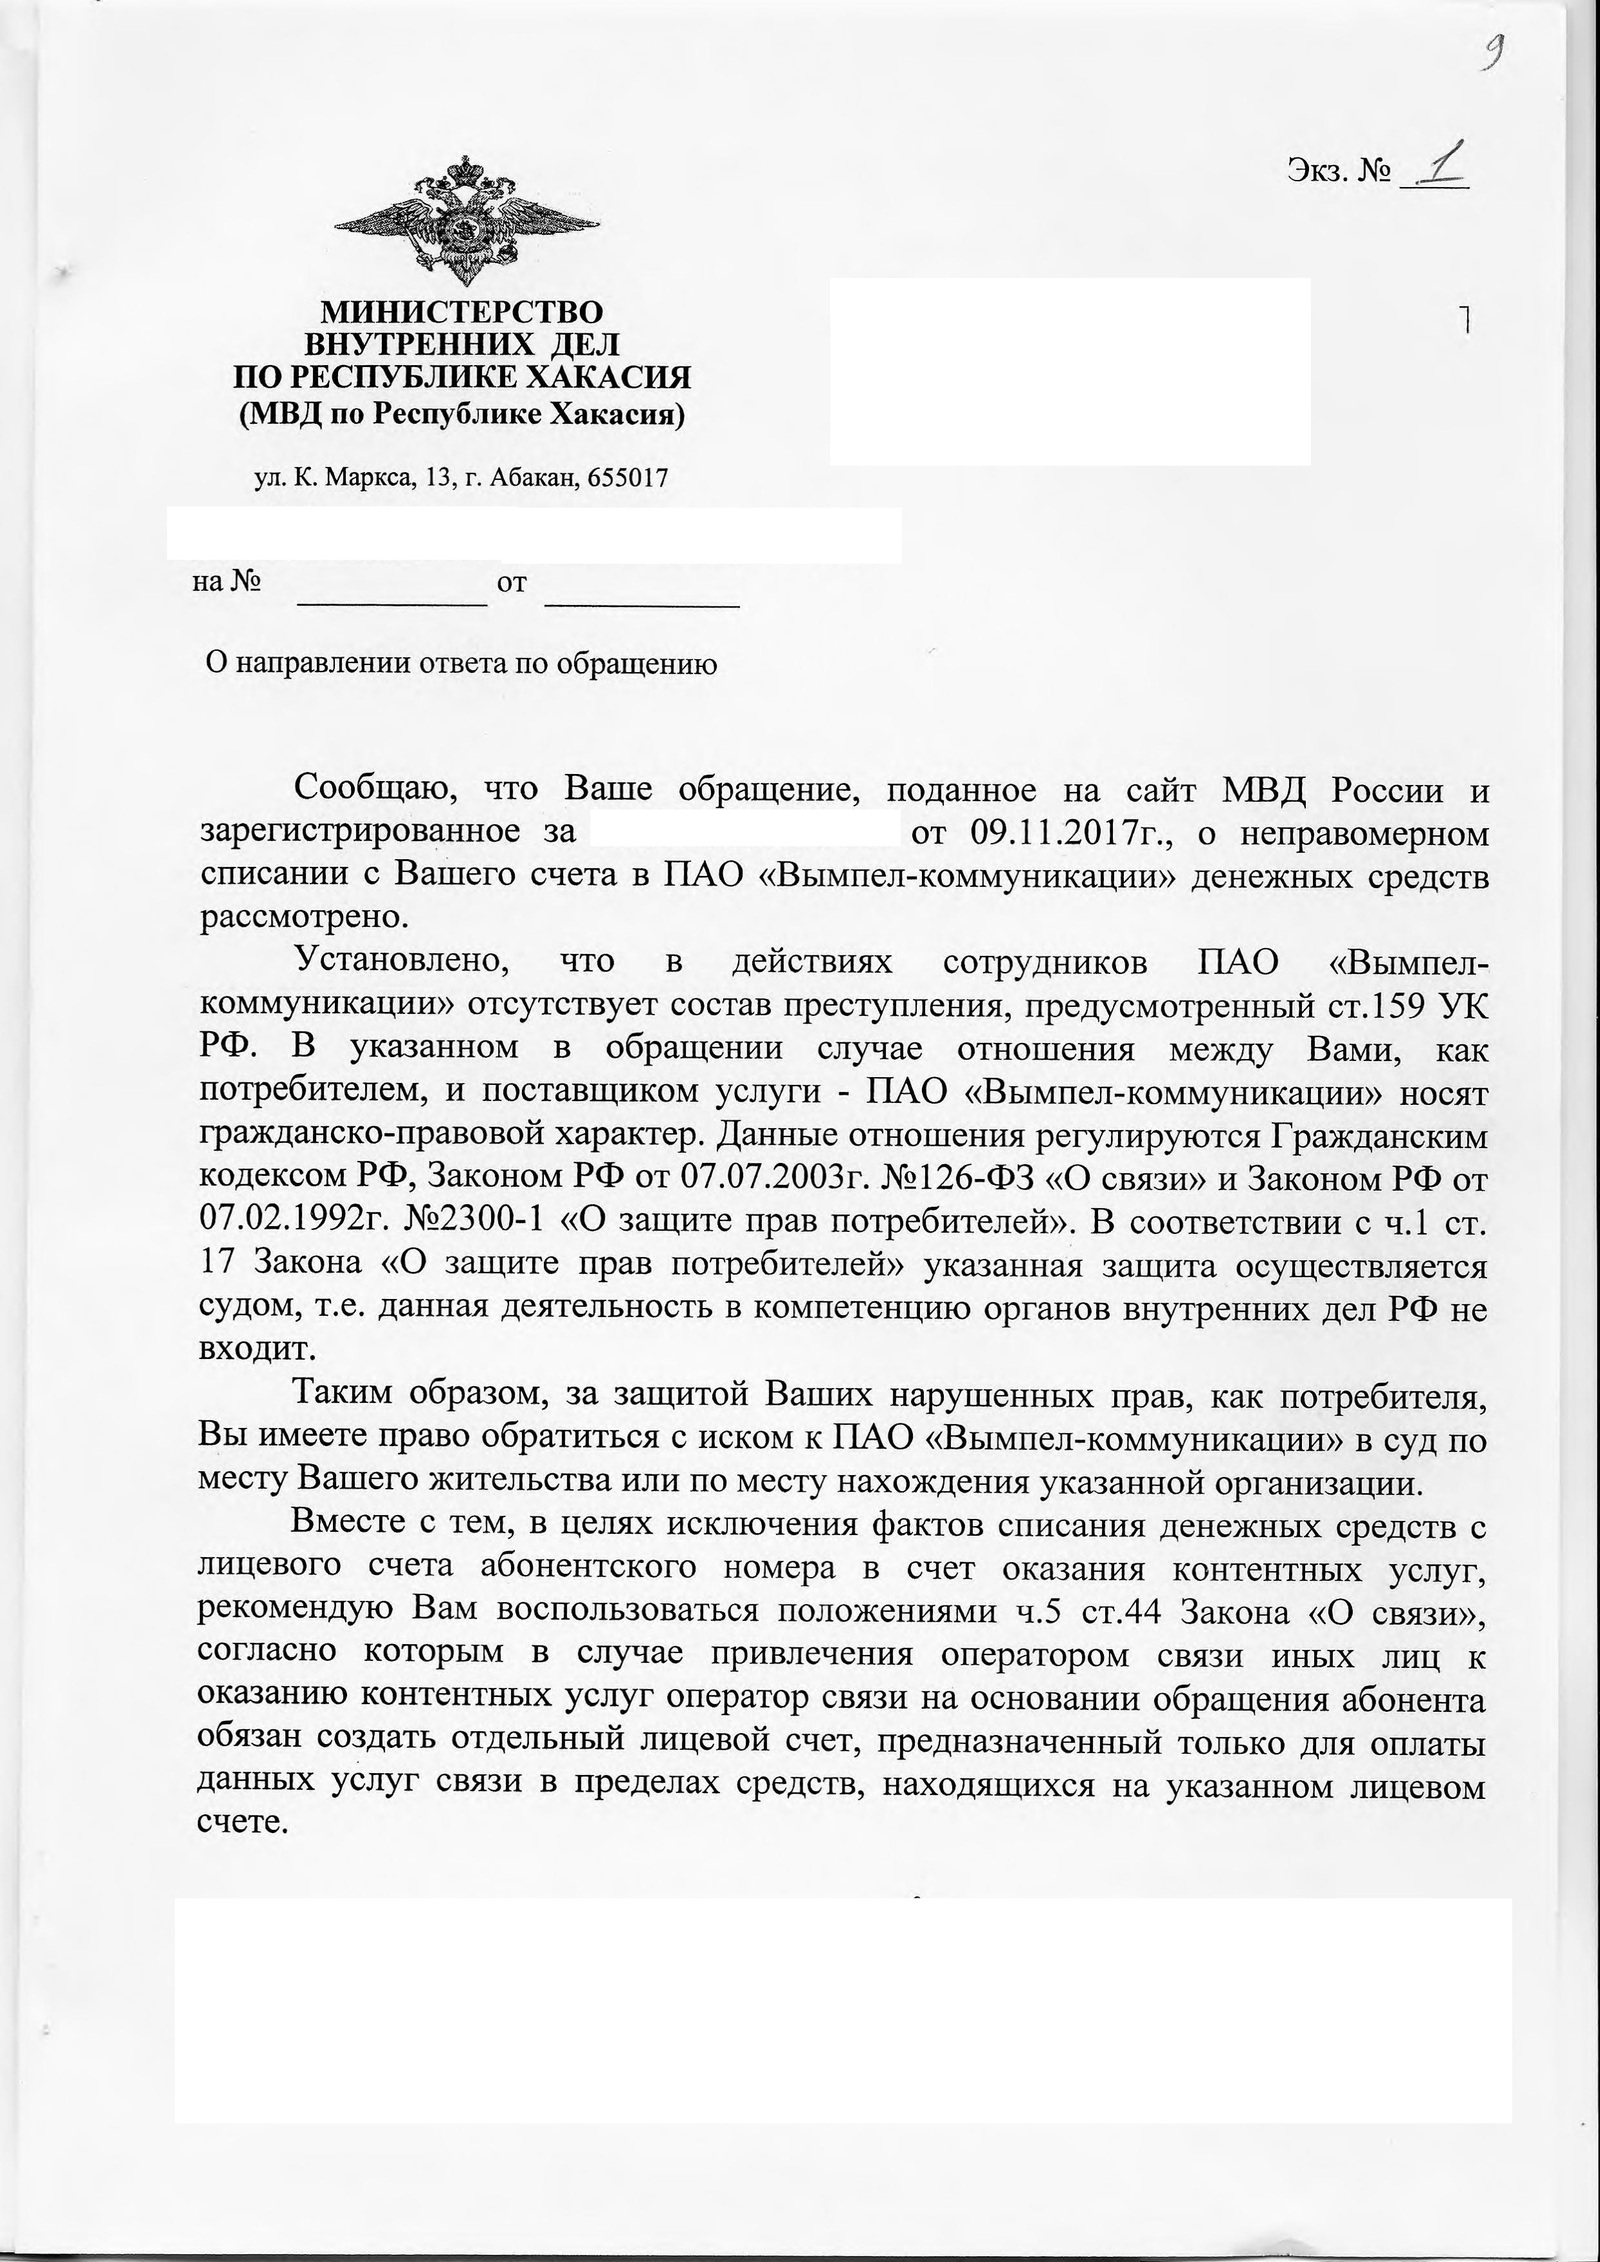 Какая статья за машеничество в 5000 тысяч рублей